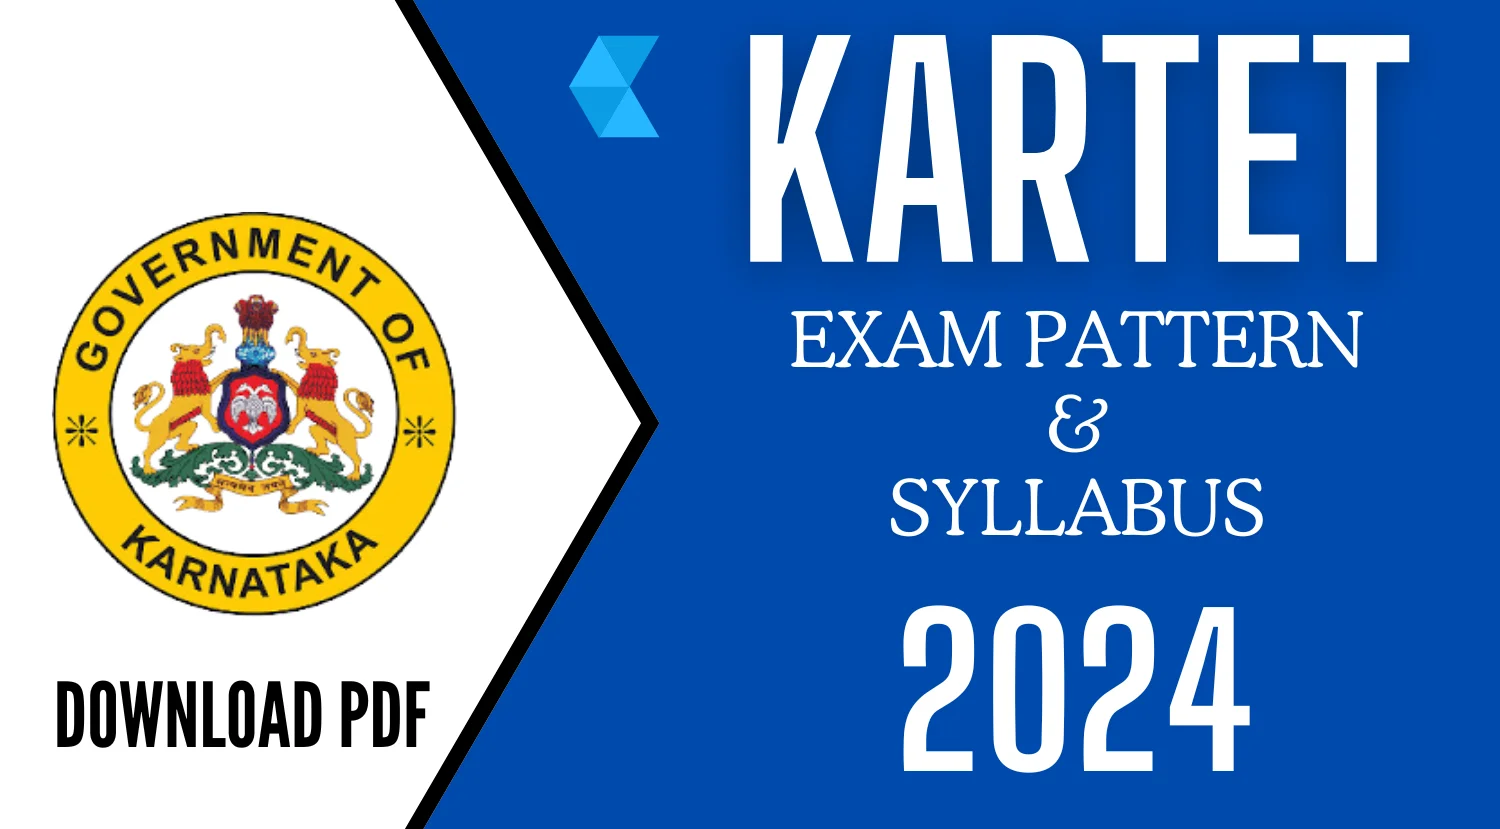 KARTET Exam Pattern and Syllabus 2024 Download PDF